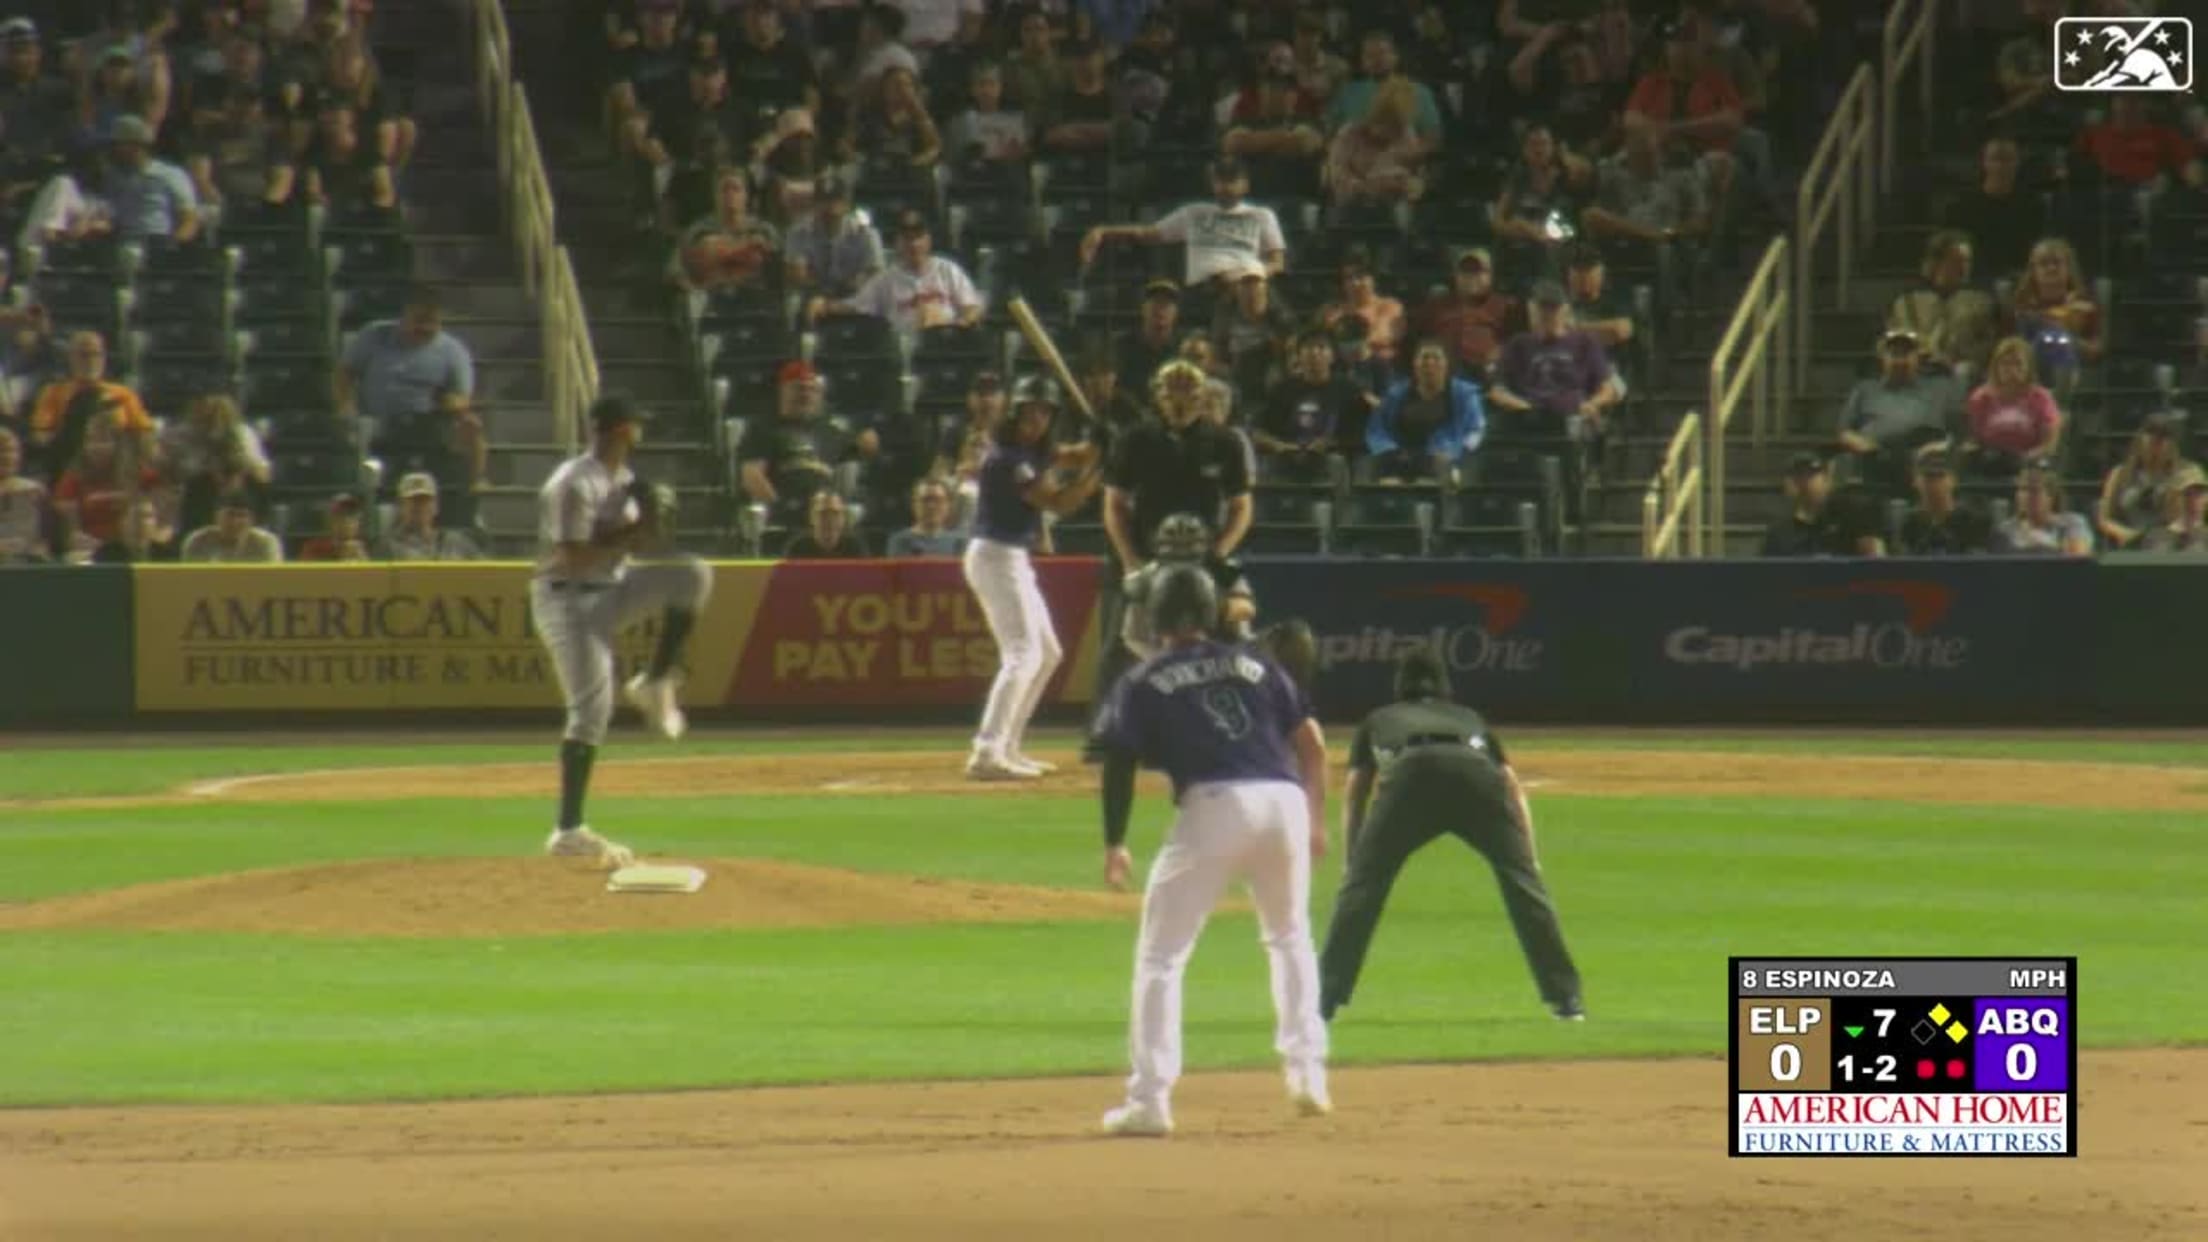 Anderson Espinoza's 5th strikeout